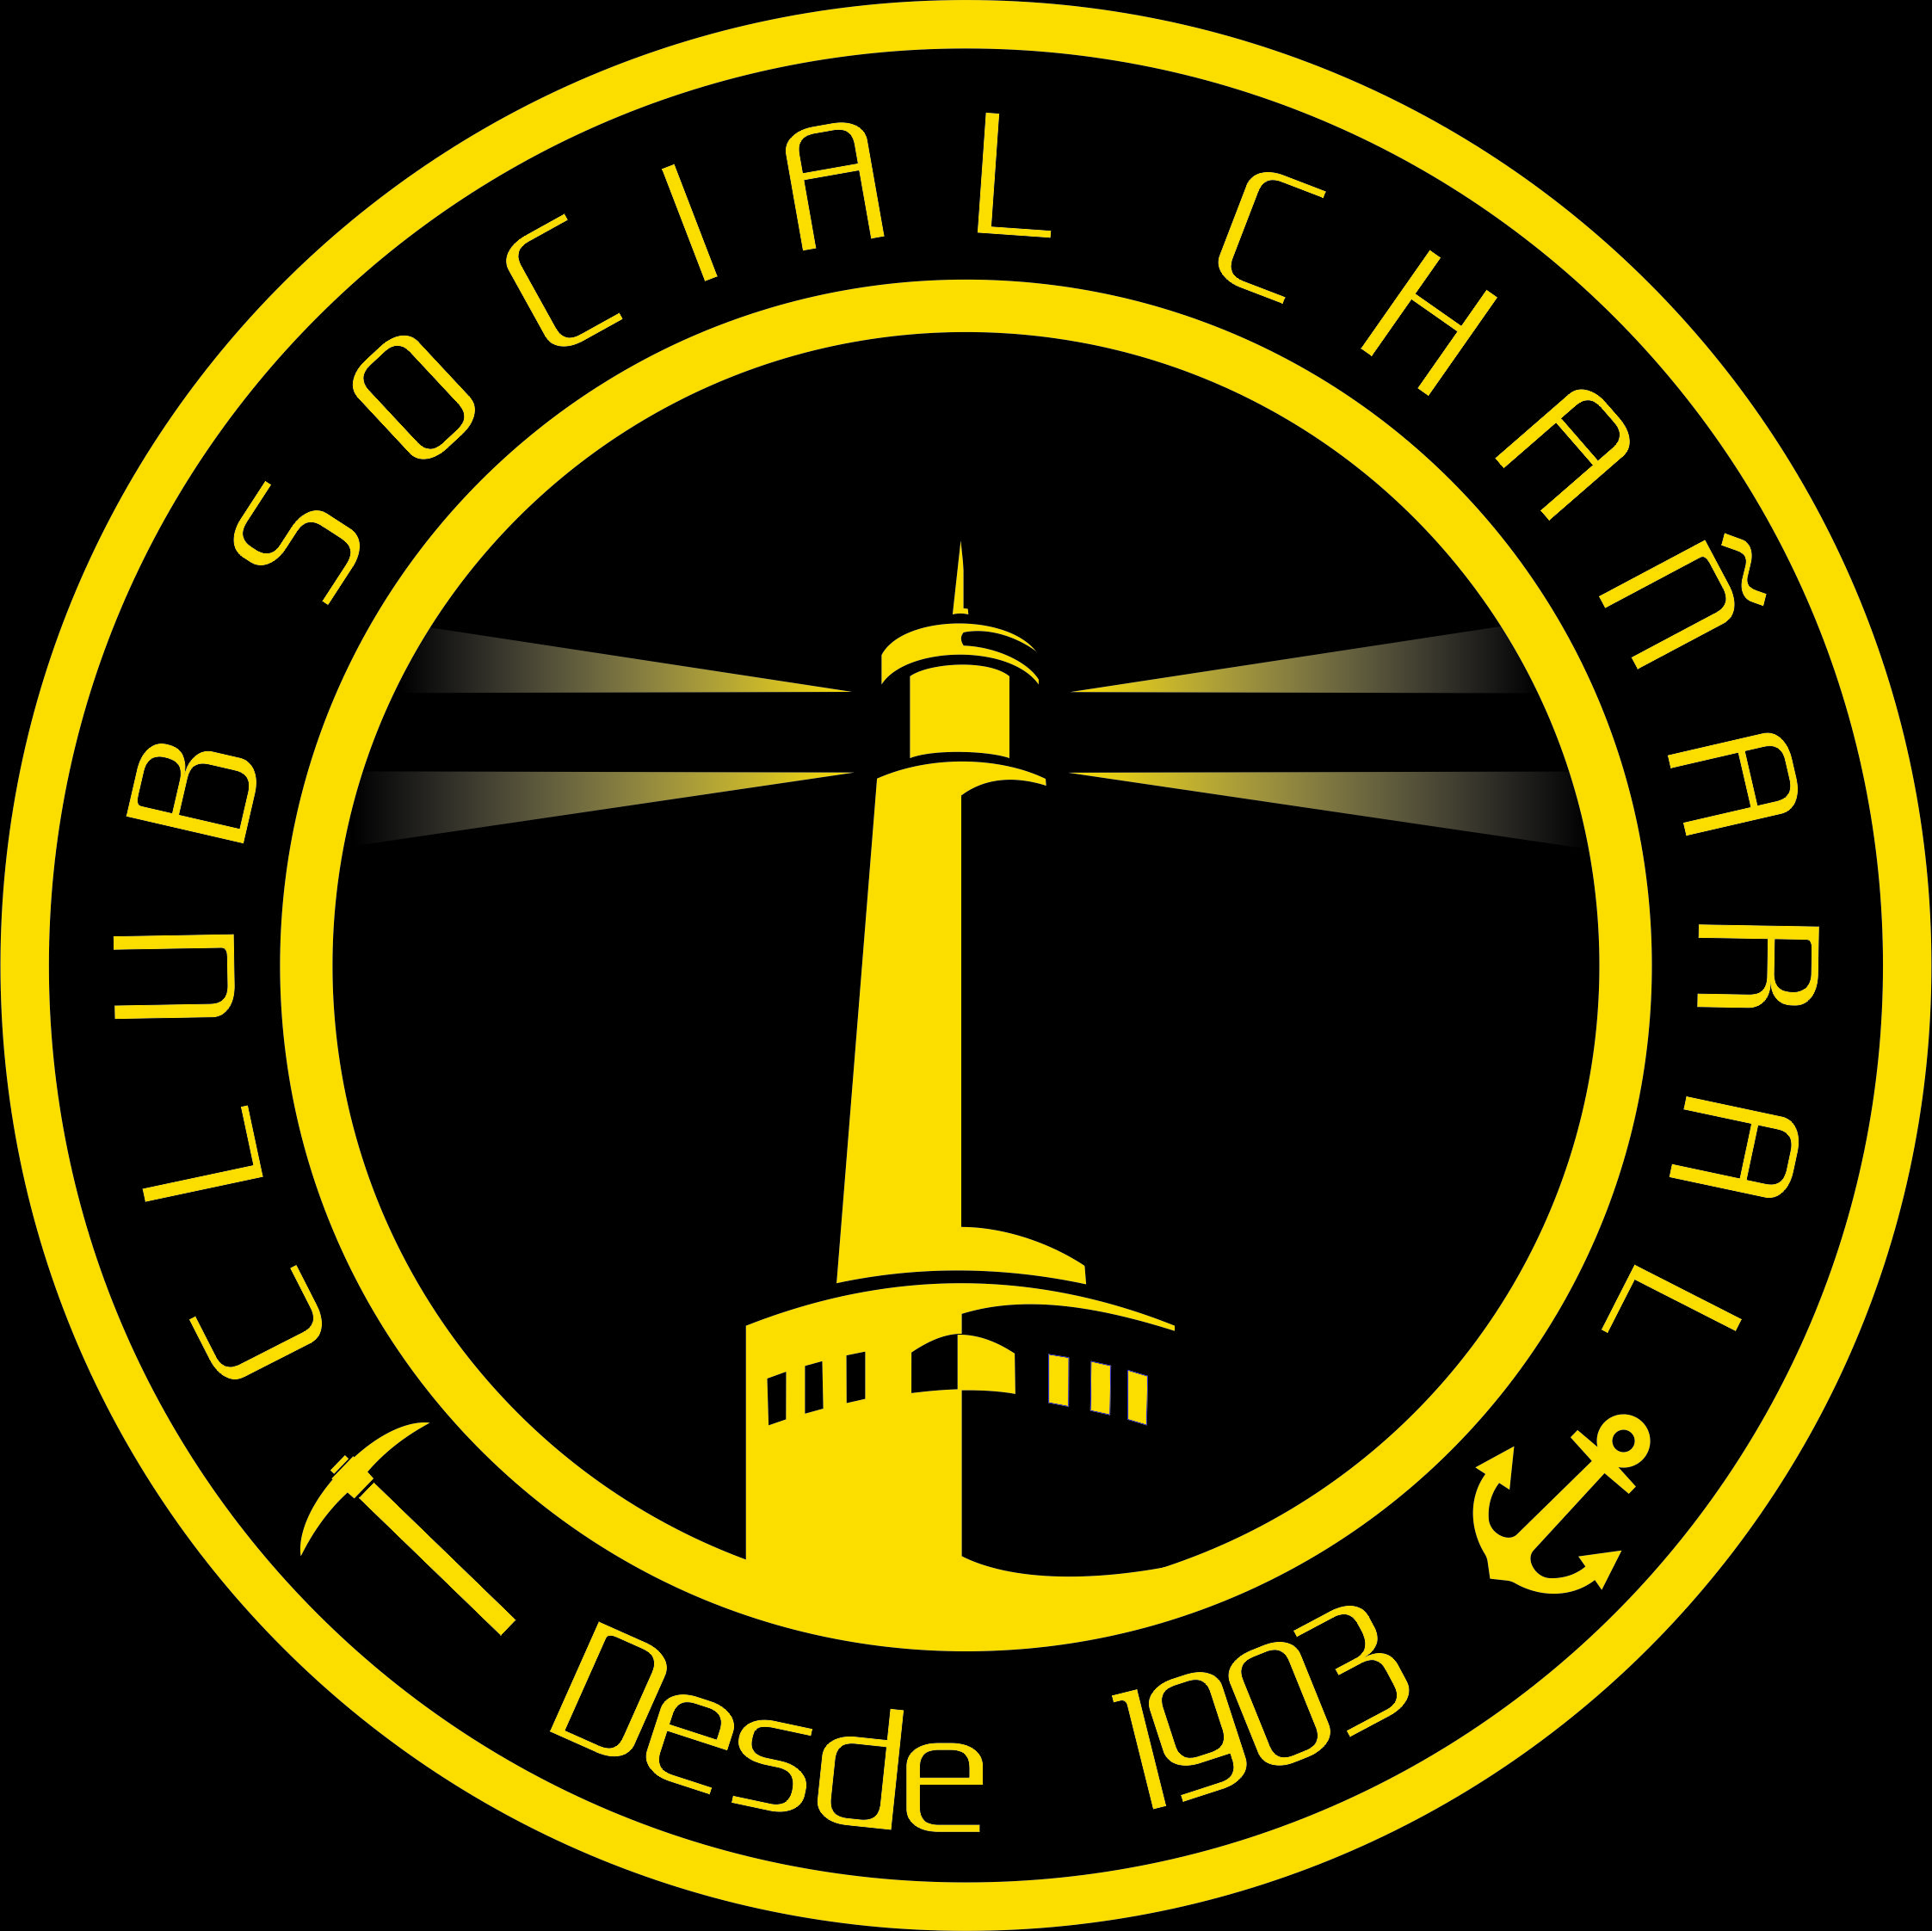 CLUB SOCIAL DE CHAÑARAL